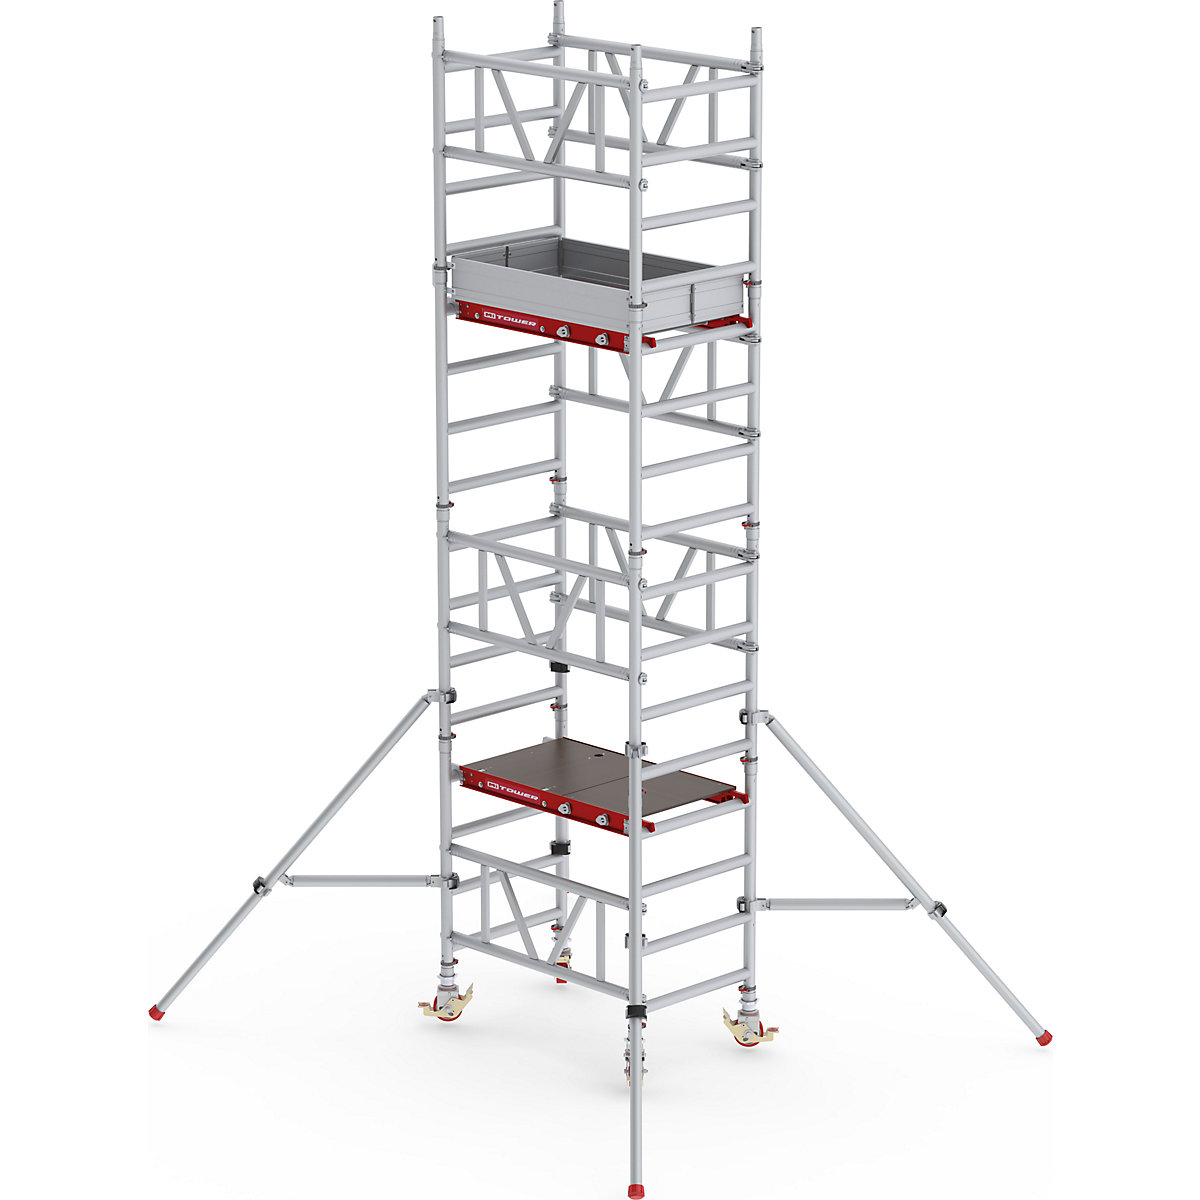 Altrex – Andaime móvel de montagem rápida MiTOWER Standard, plataforma de madeira, CxL 1200 x 750 mm, altura de trabalho 5 m